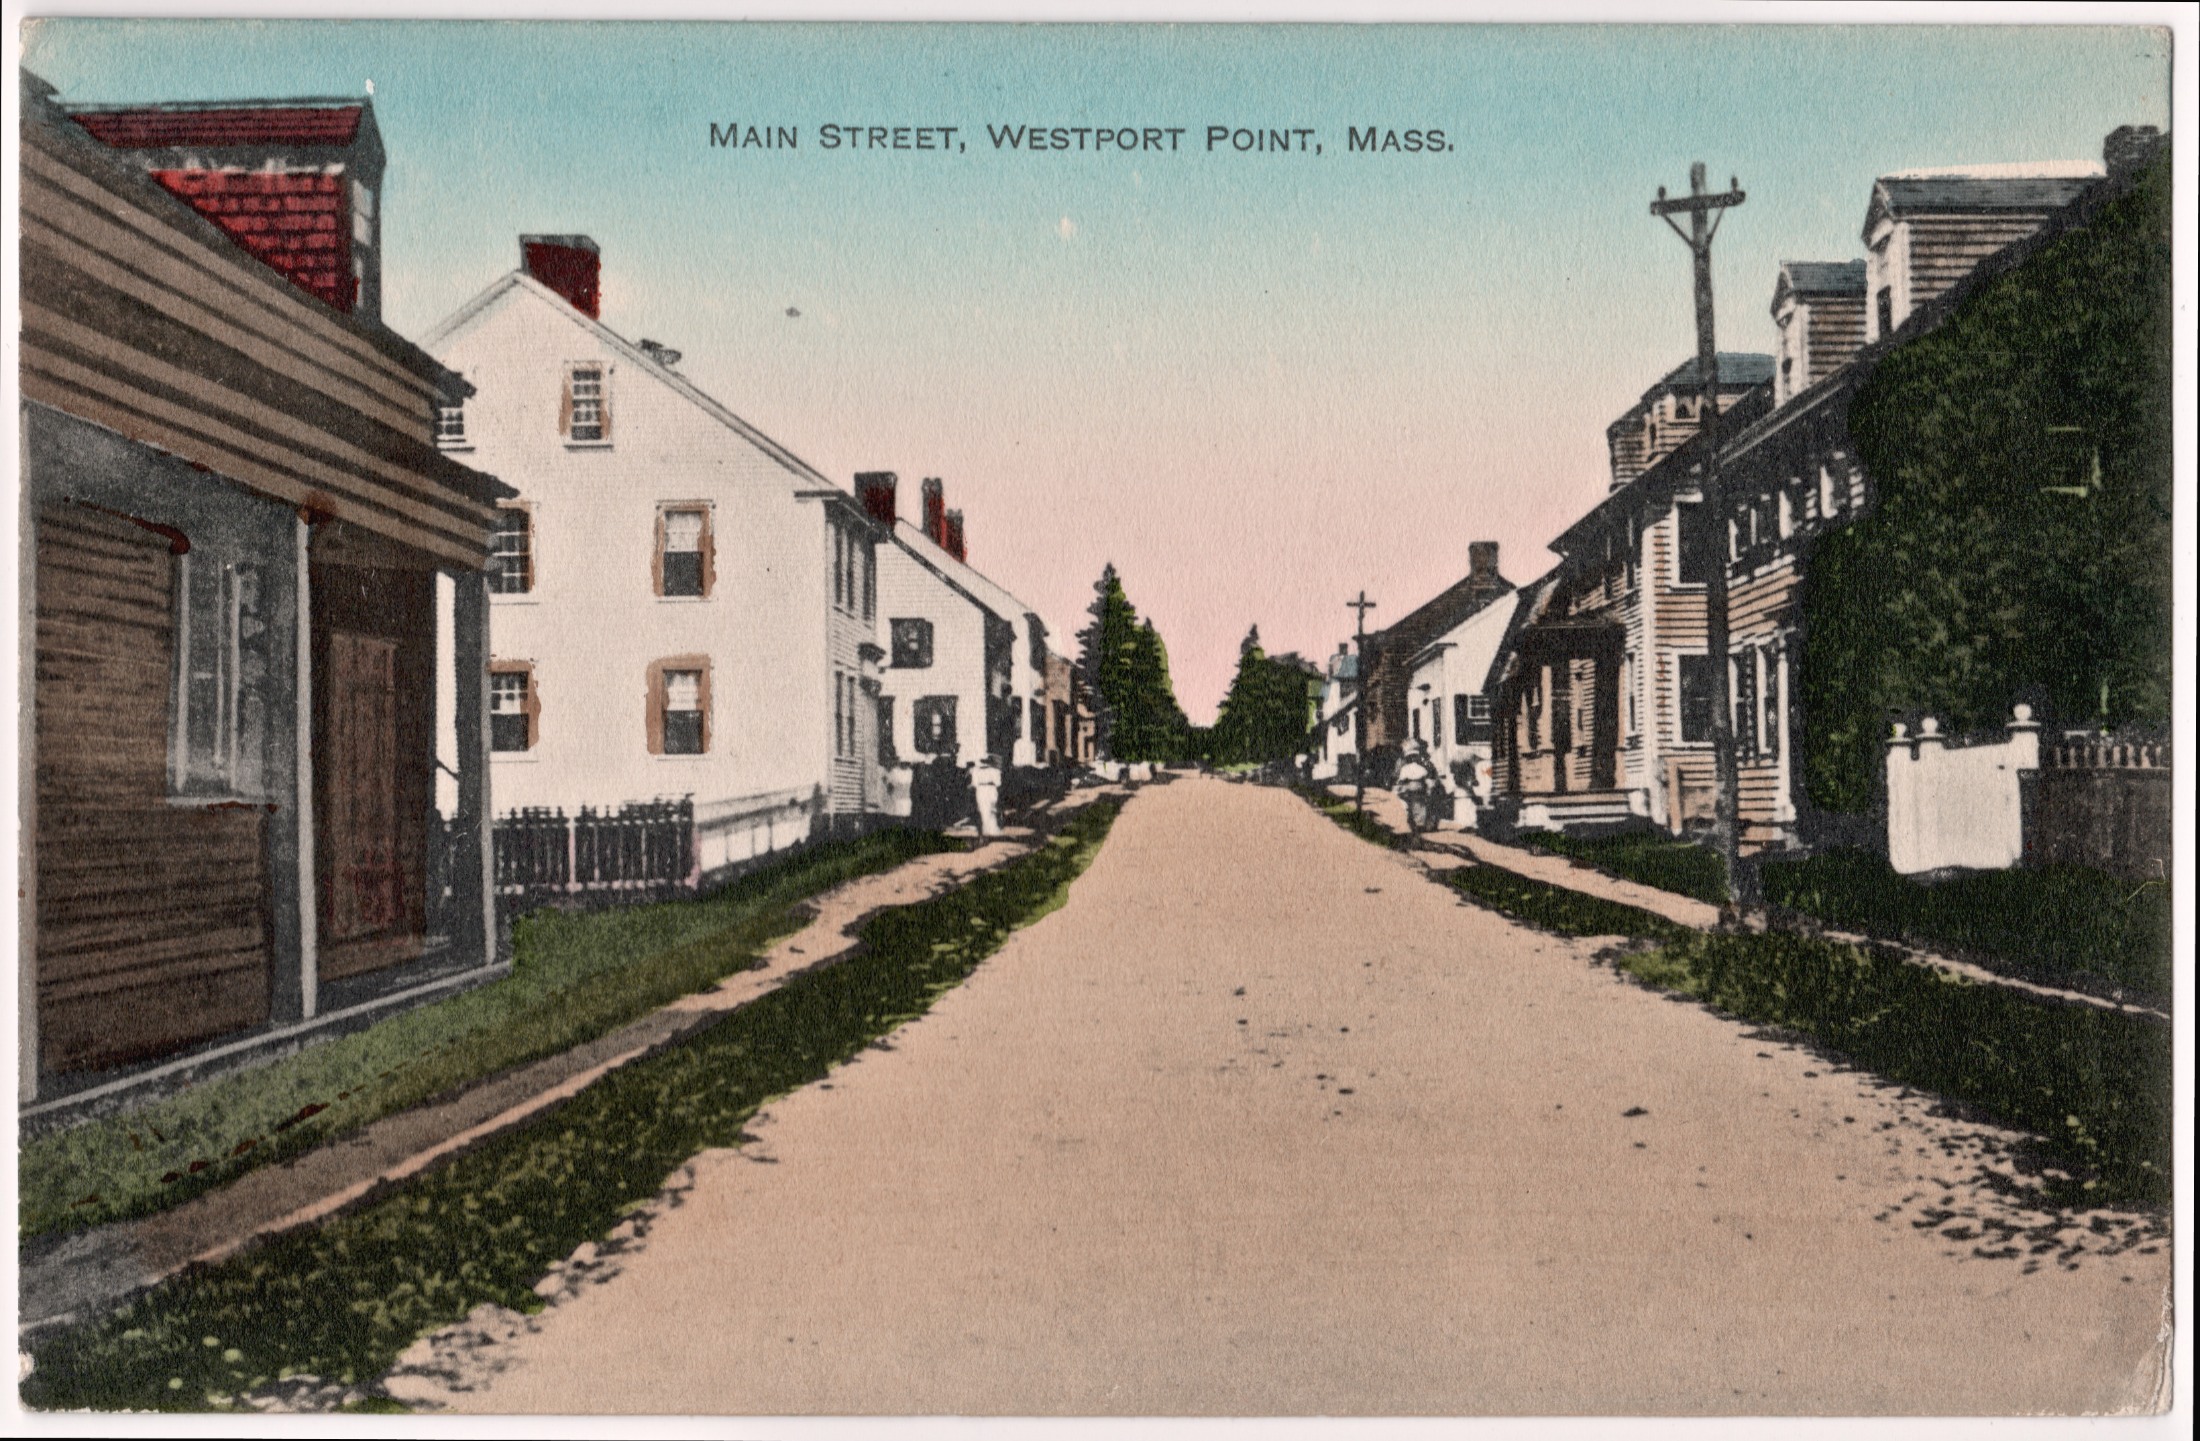 Main Street, Westport Point, Mass.